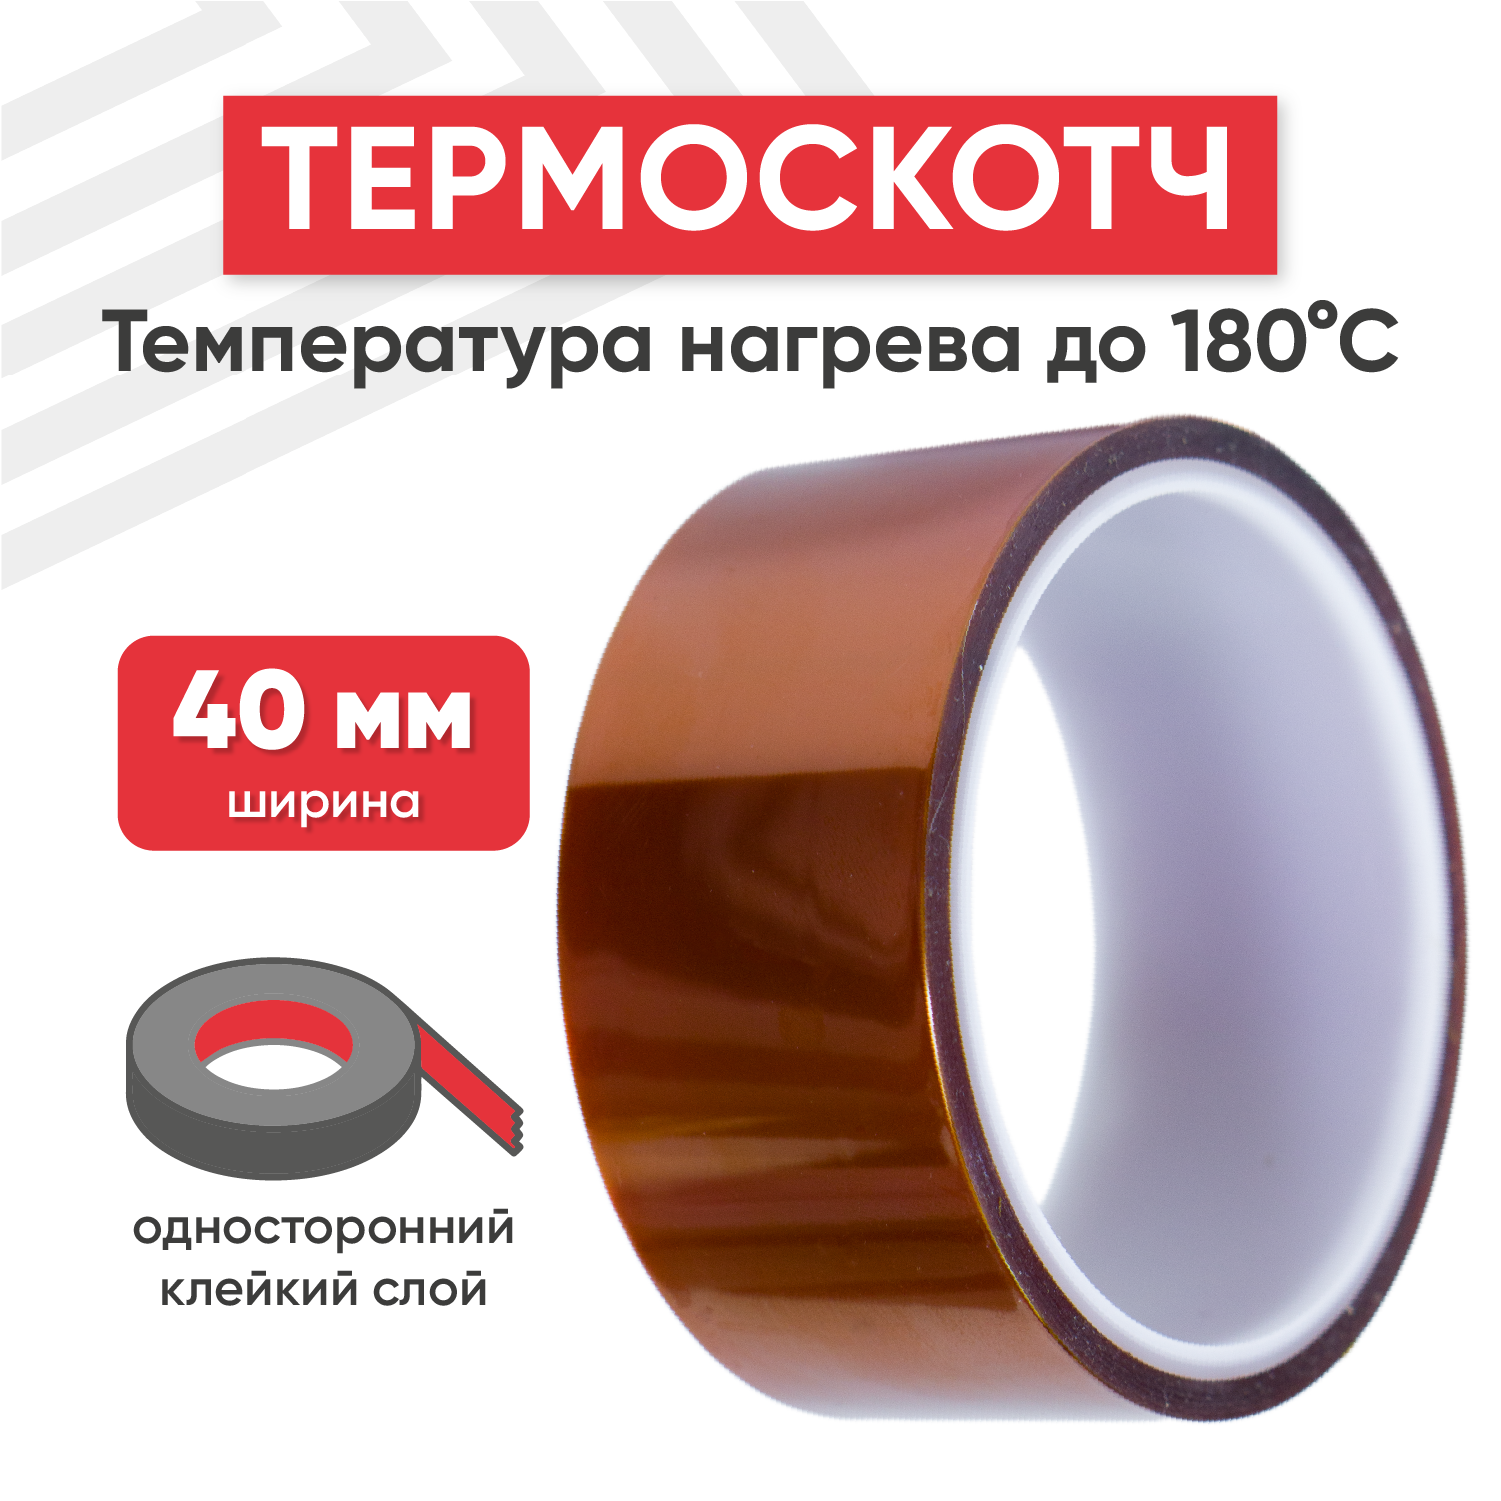 Термостойкая клейкая лента (термоскотч) шириной 40 мм, 33 метра, нагрев до 180 градусов Цельсия